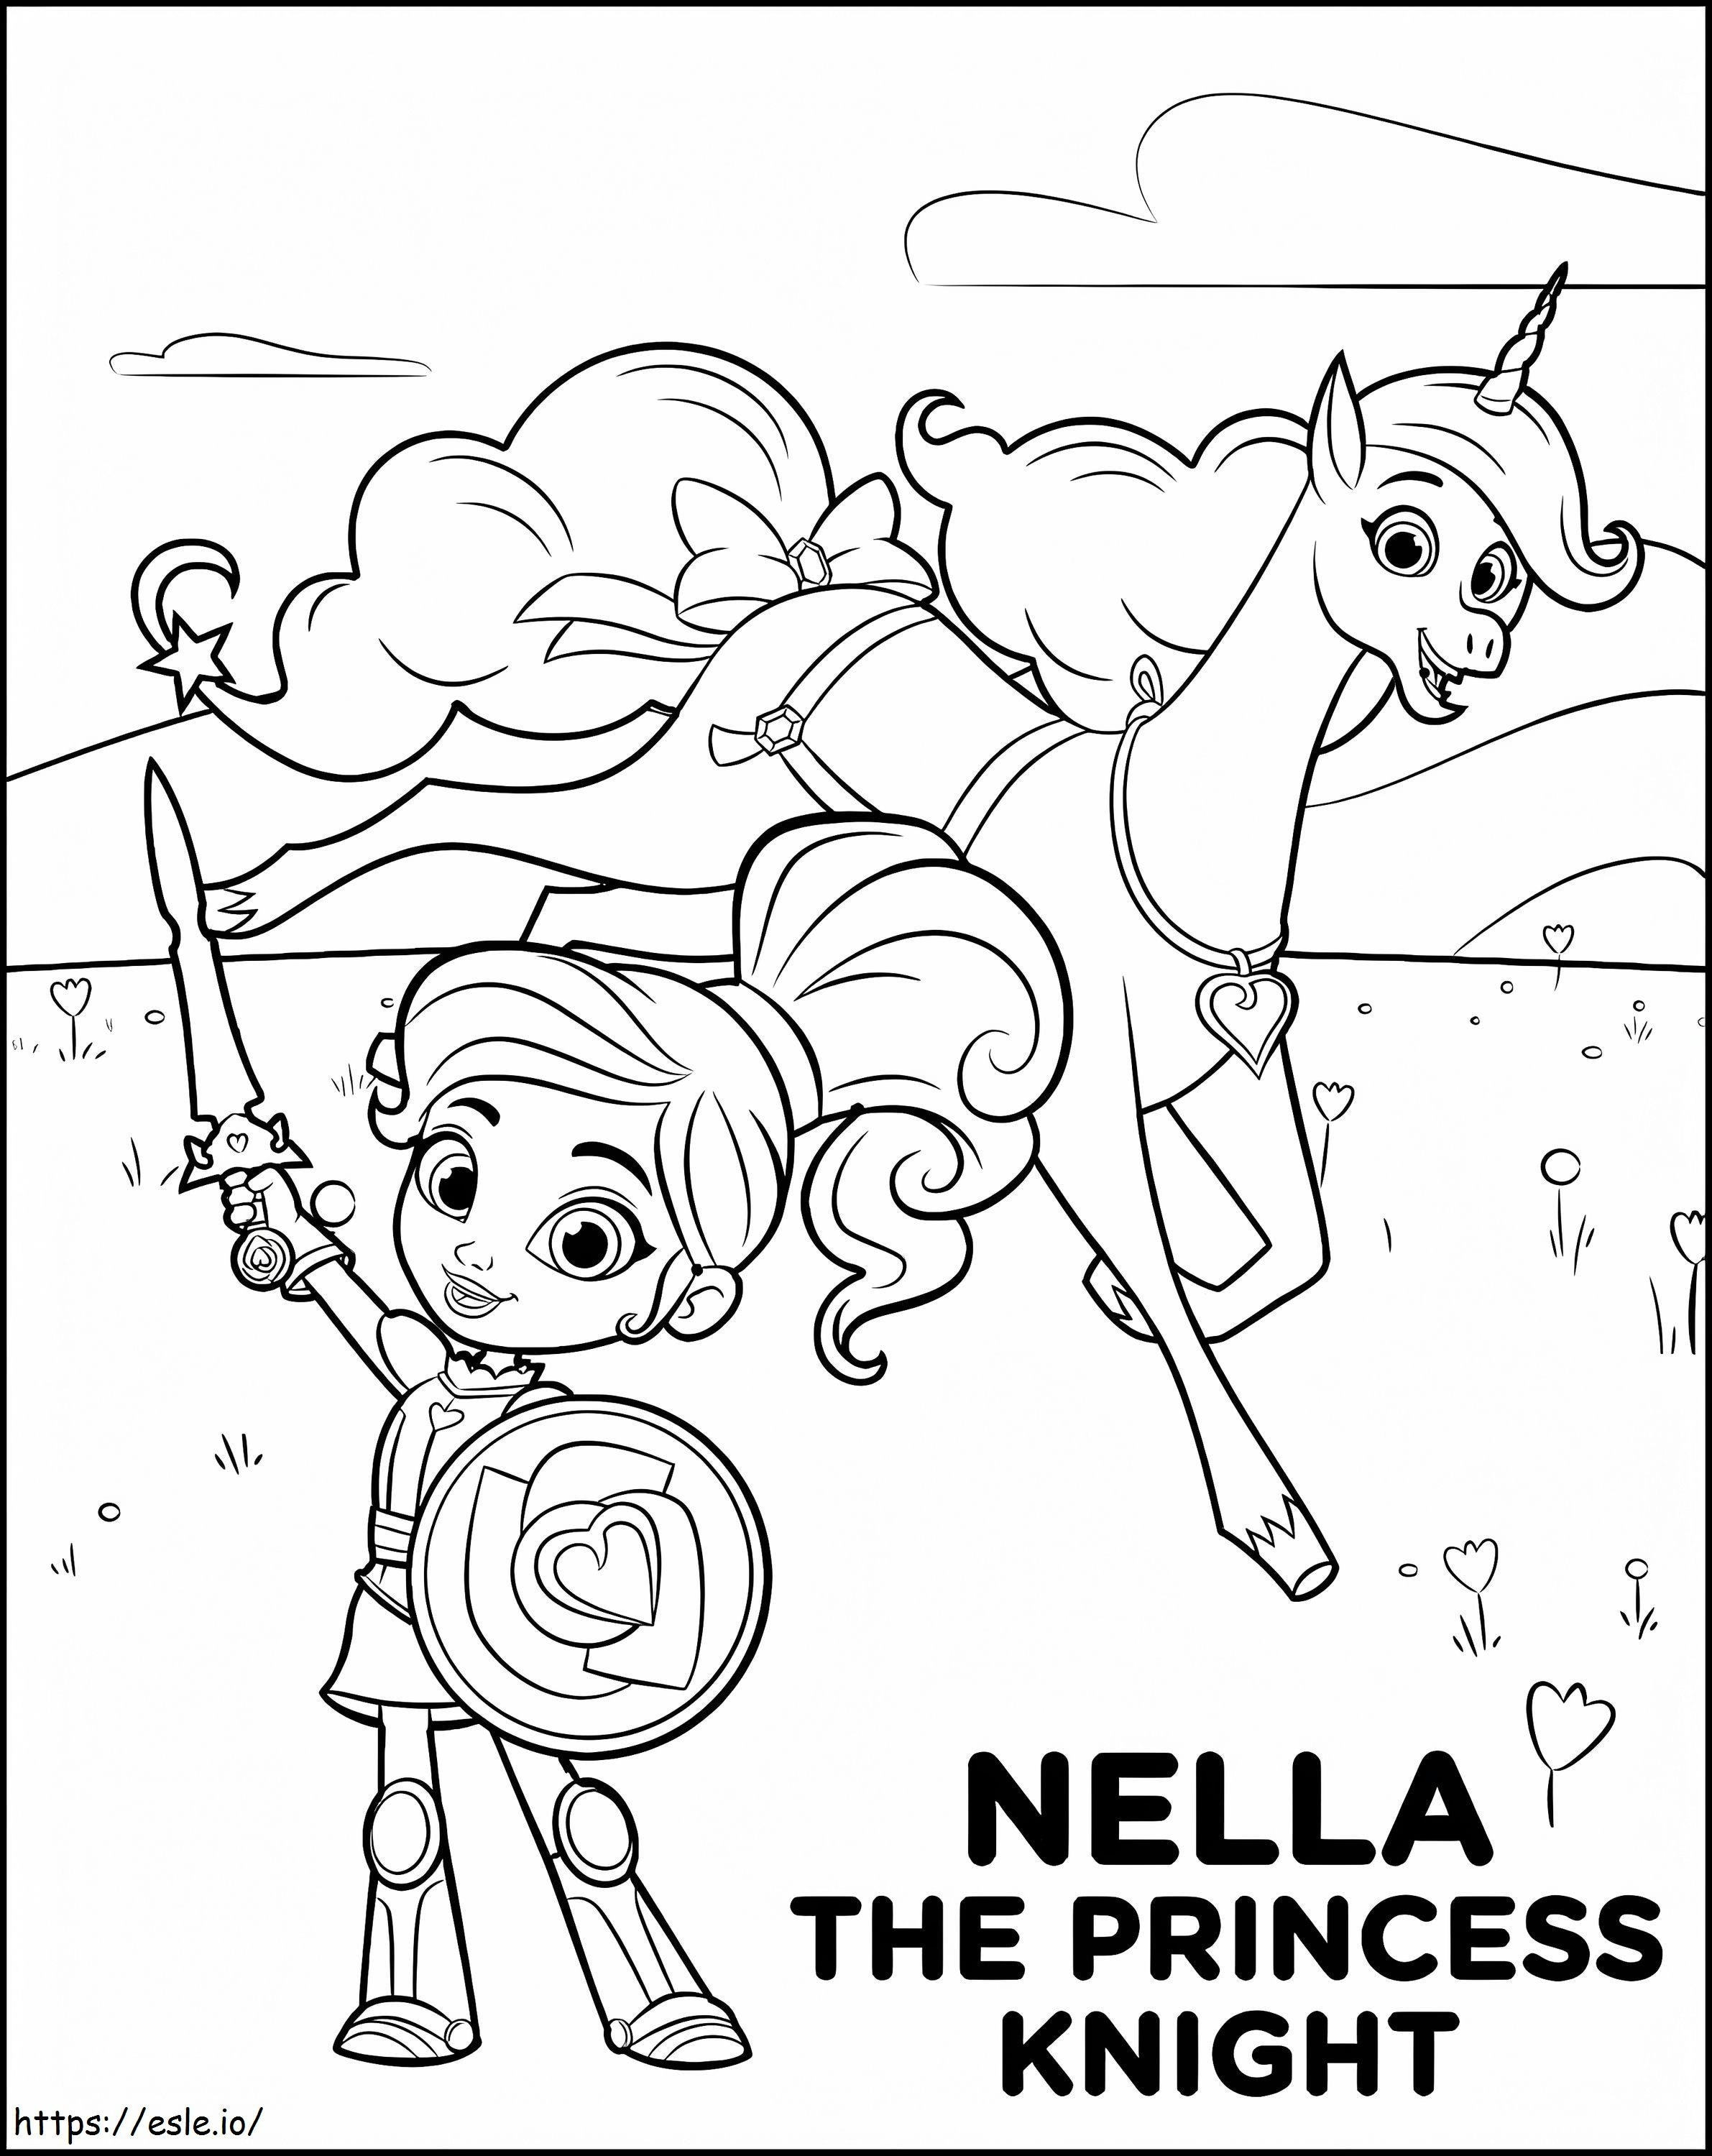 Nella The Princess Knight 2 coloring page